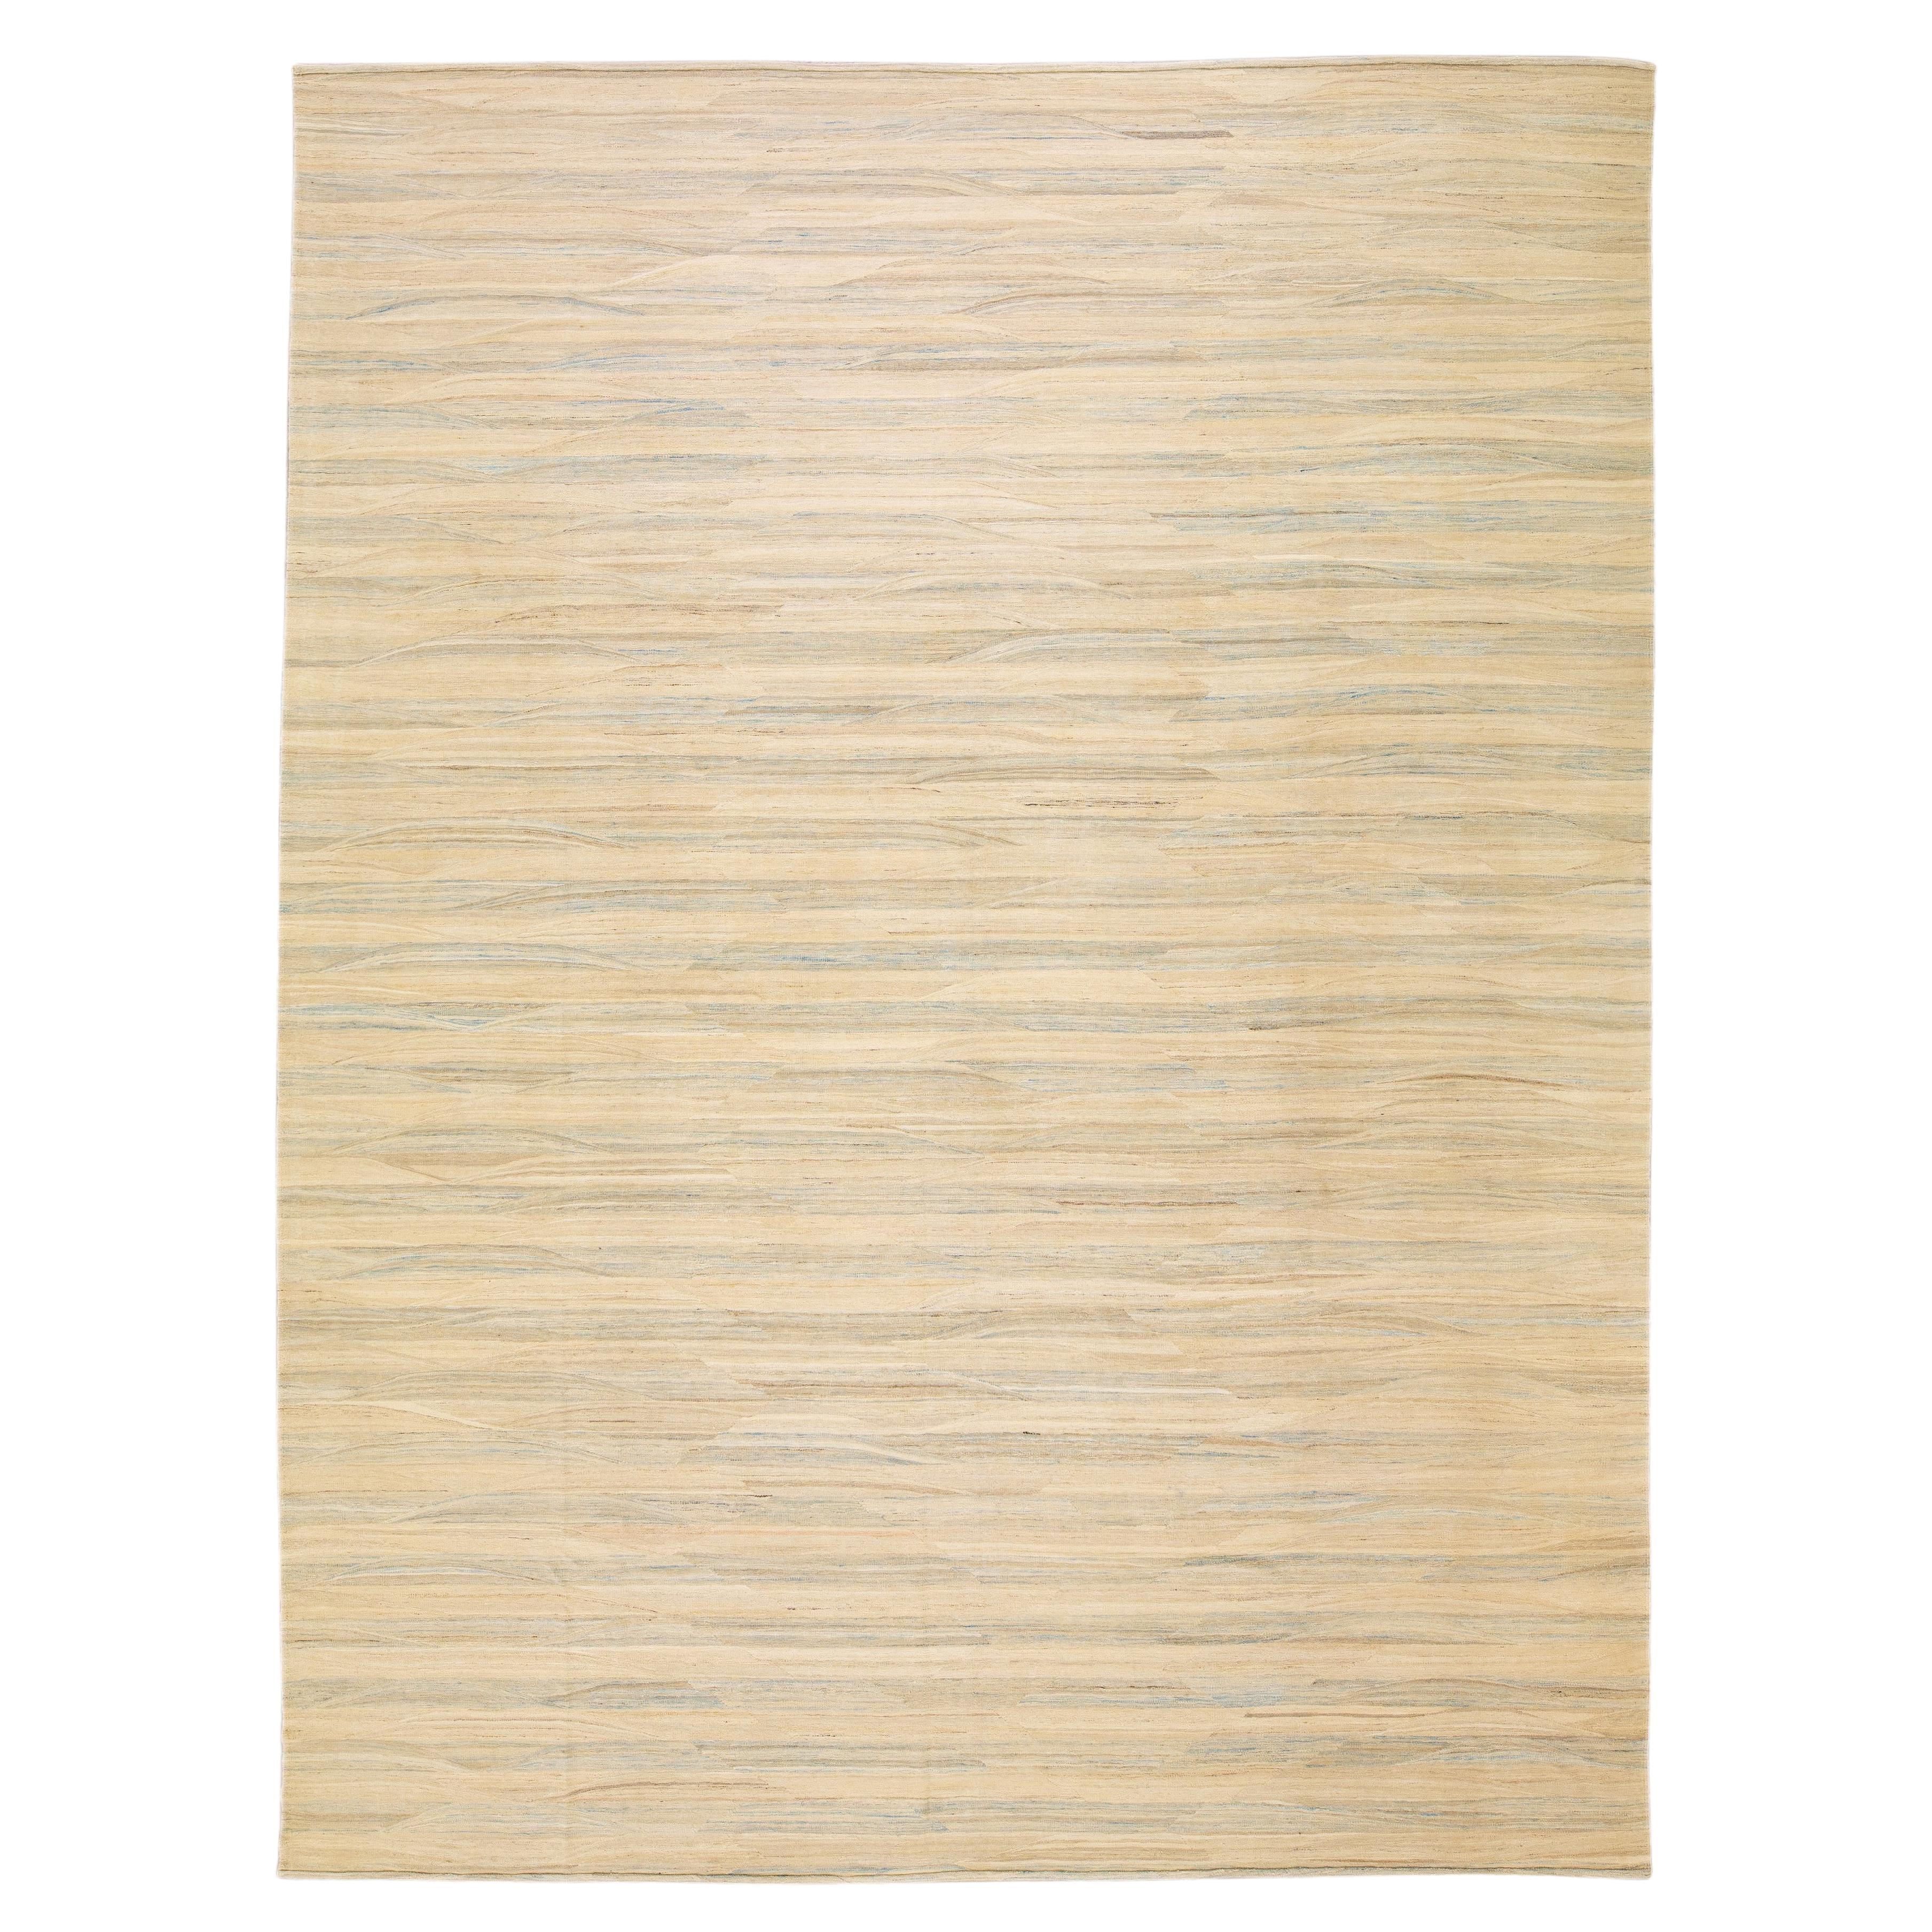 Tapis Kilim moderne beige en laine tissé à plat à motif rayé abstrait et surdimensionné, fait à la main